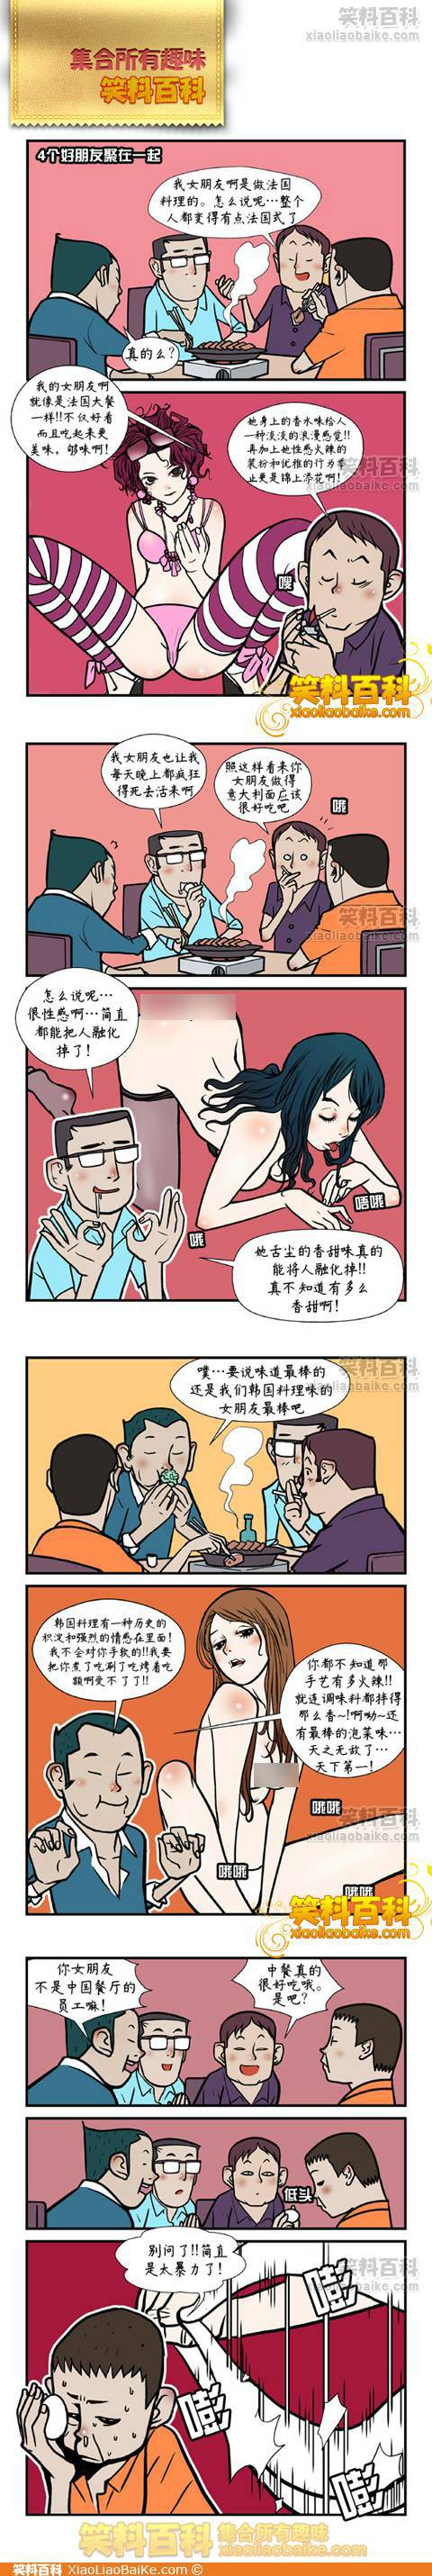 邪恶漫画爆笑囧图第003刊：家有悍妻